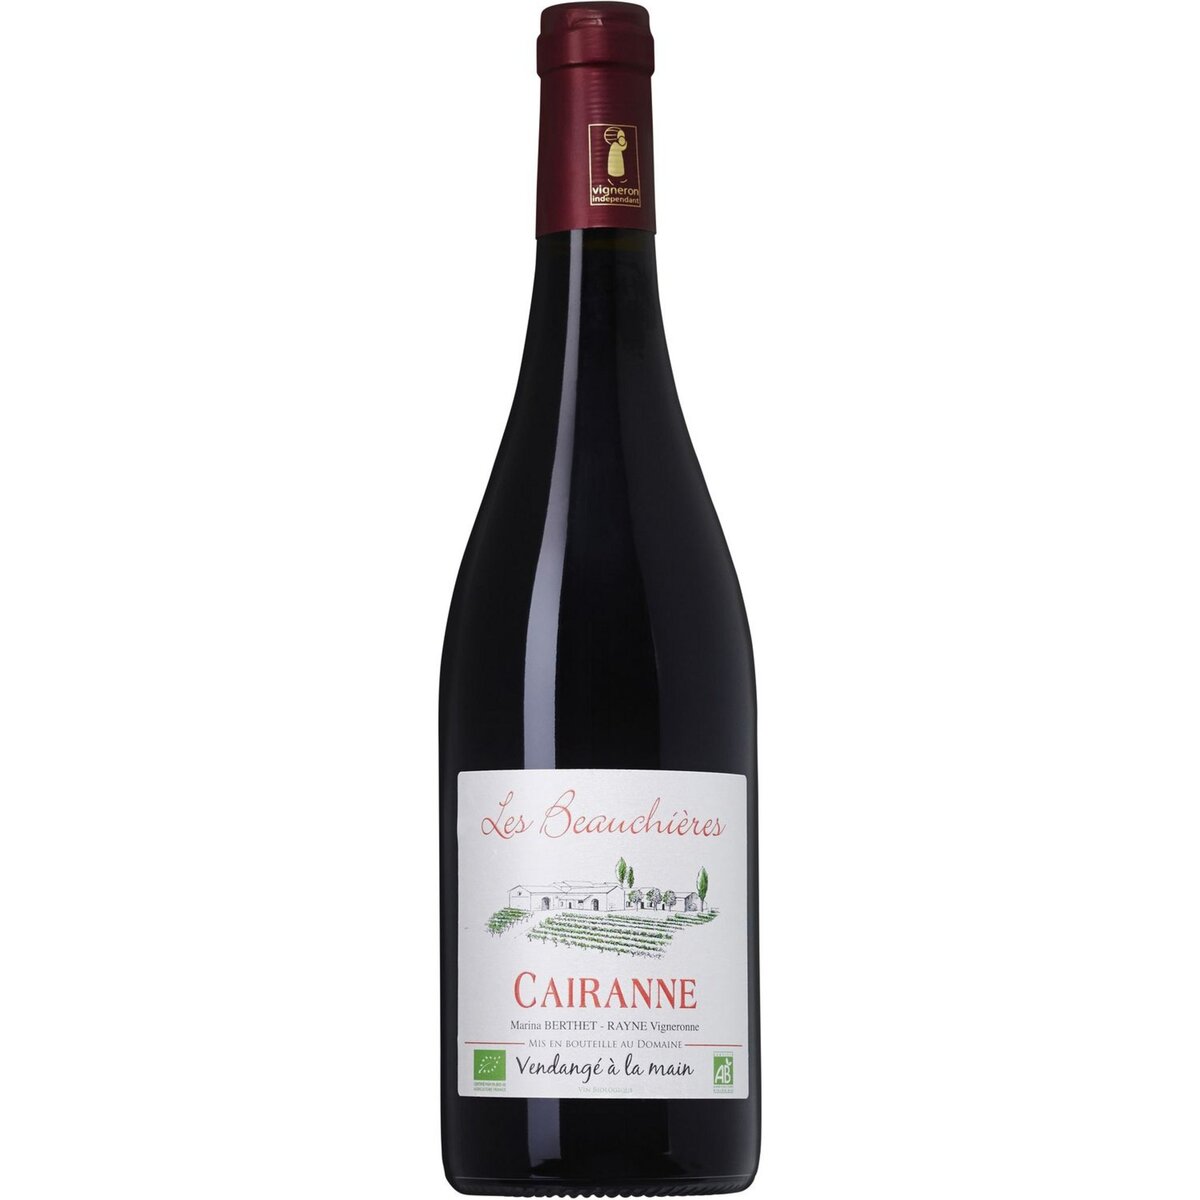 Vin rouge AOP Cairanne bio Les Beauchières Berthet Rayne 2019 75cl